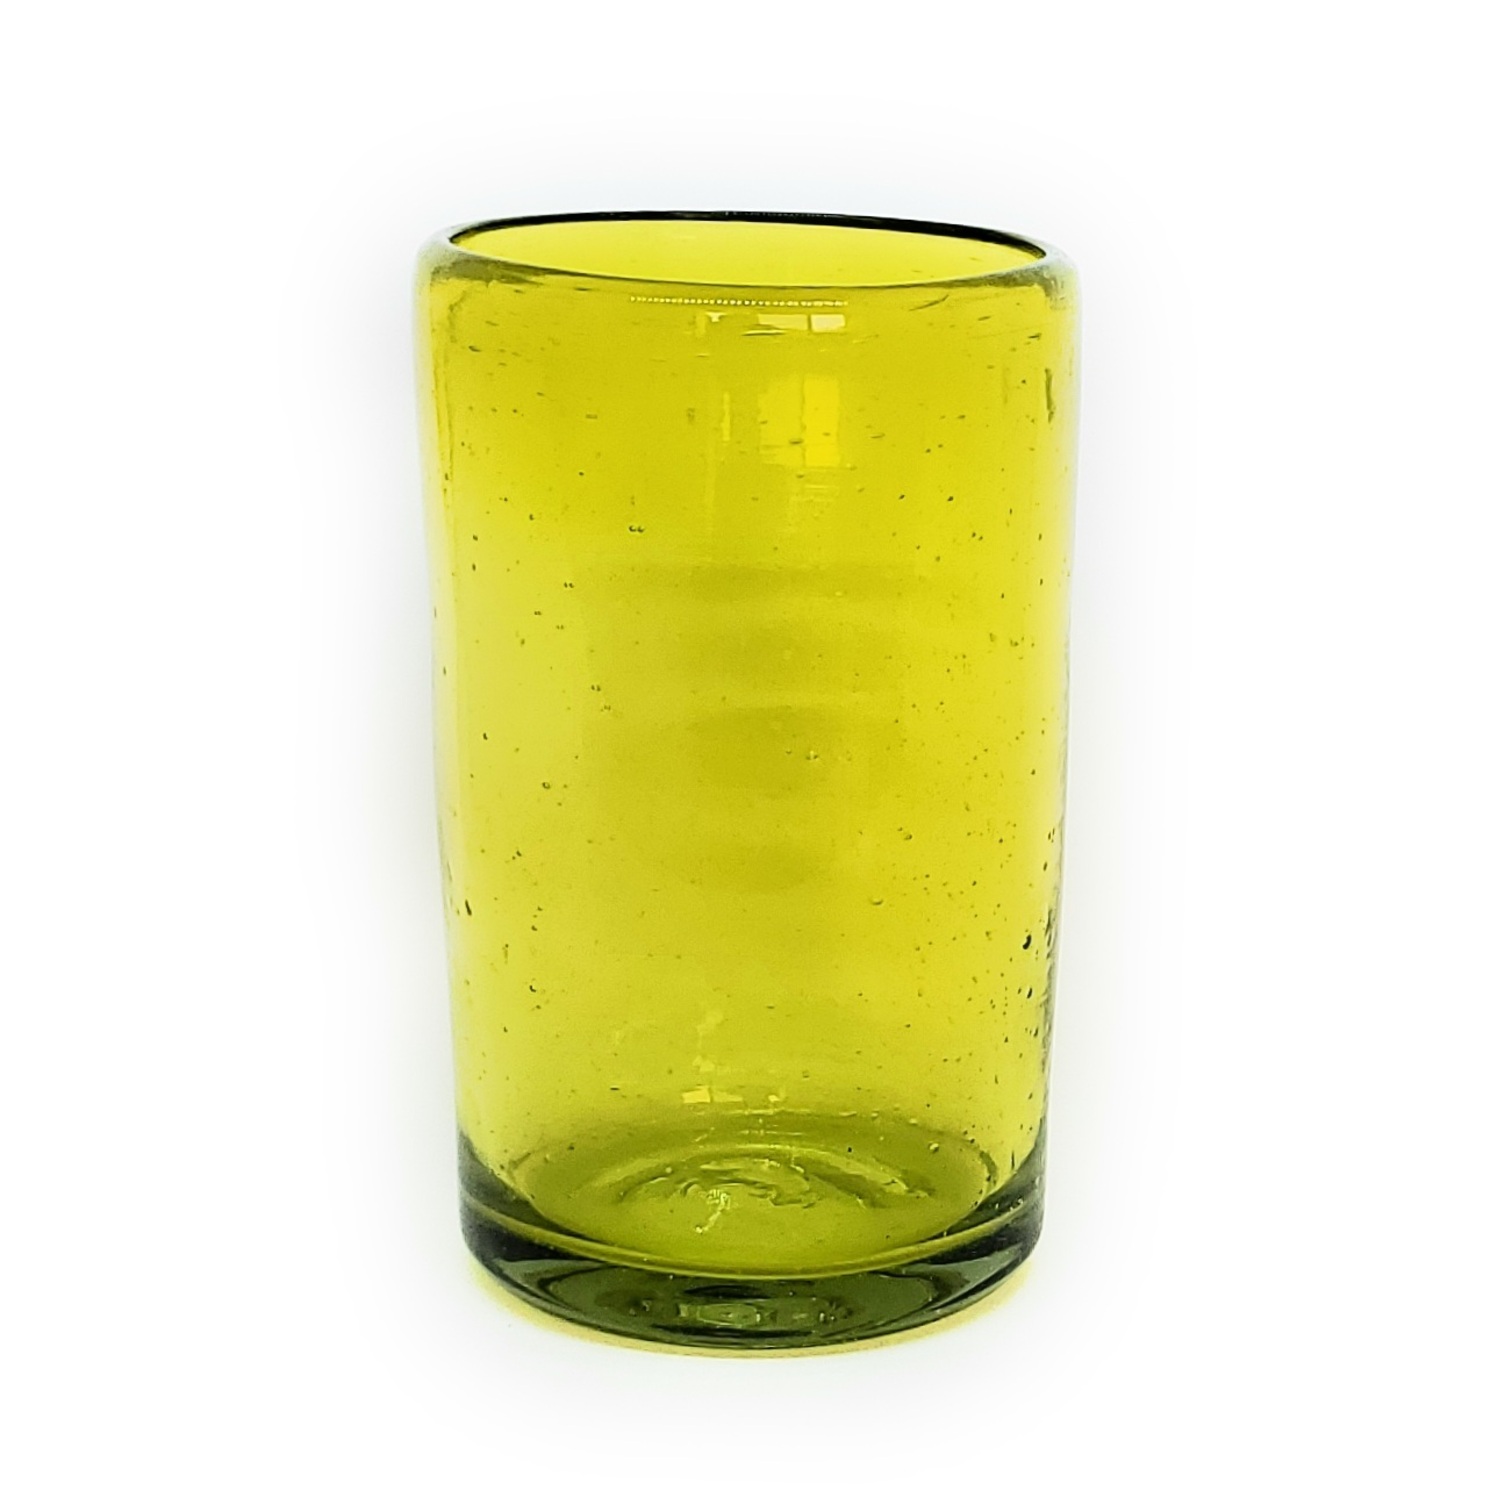 Novedades / Juego de 6 vasos grandes color amarillos / �stos artesanales vasos le dar�n un toque cl�sico a su bebida favorita.